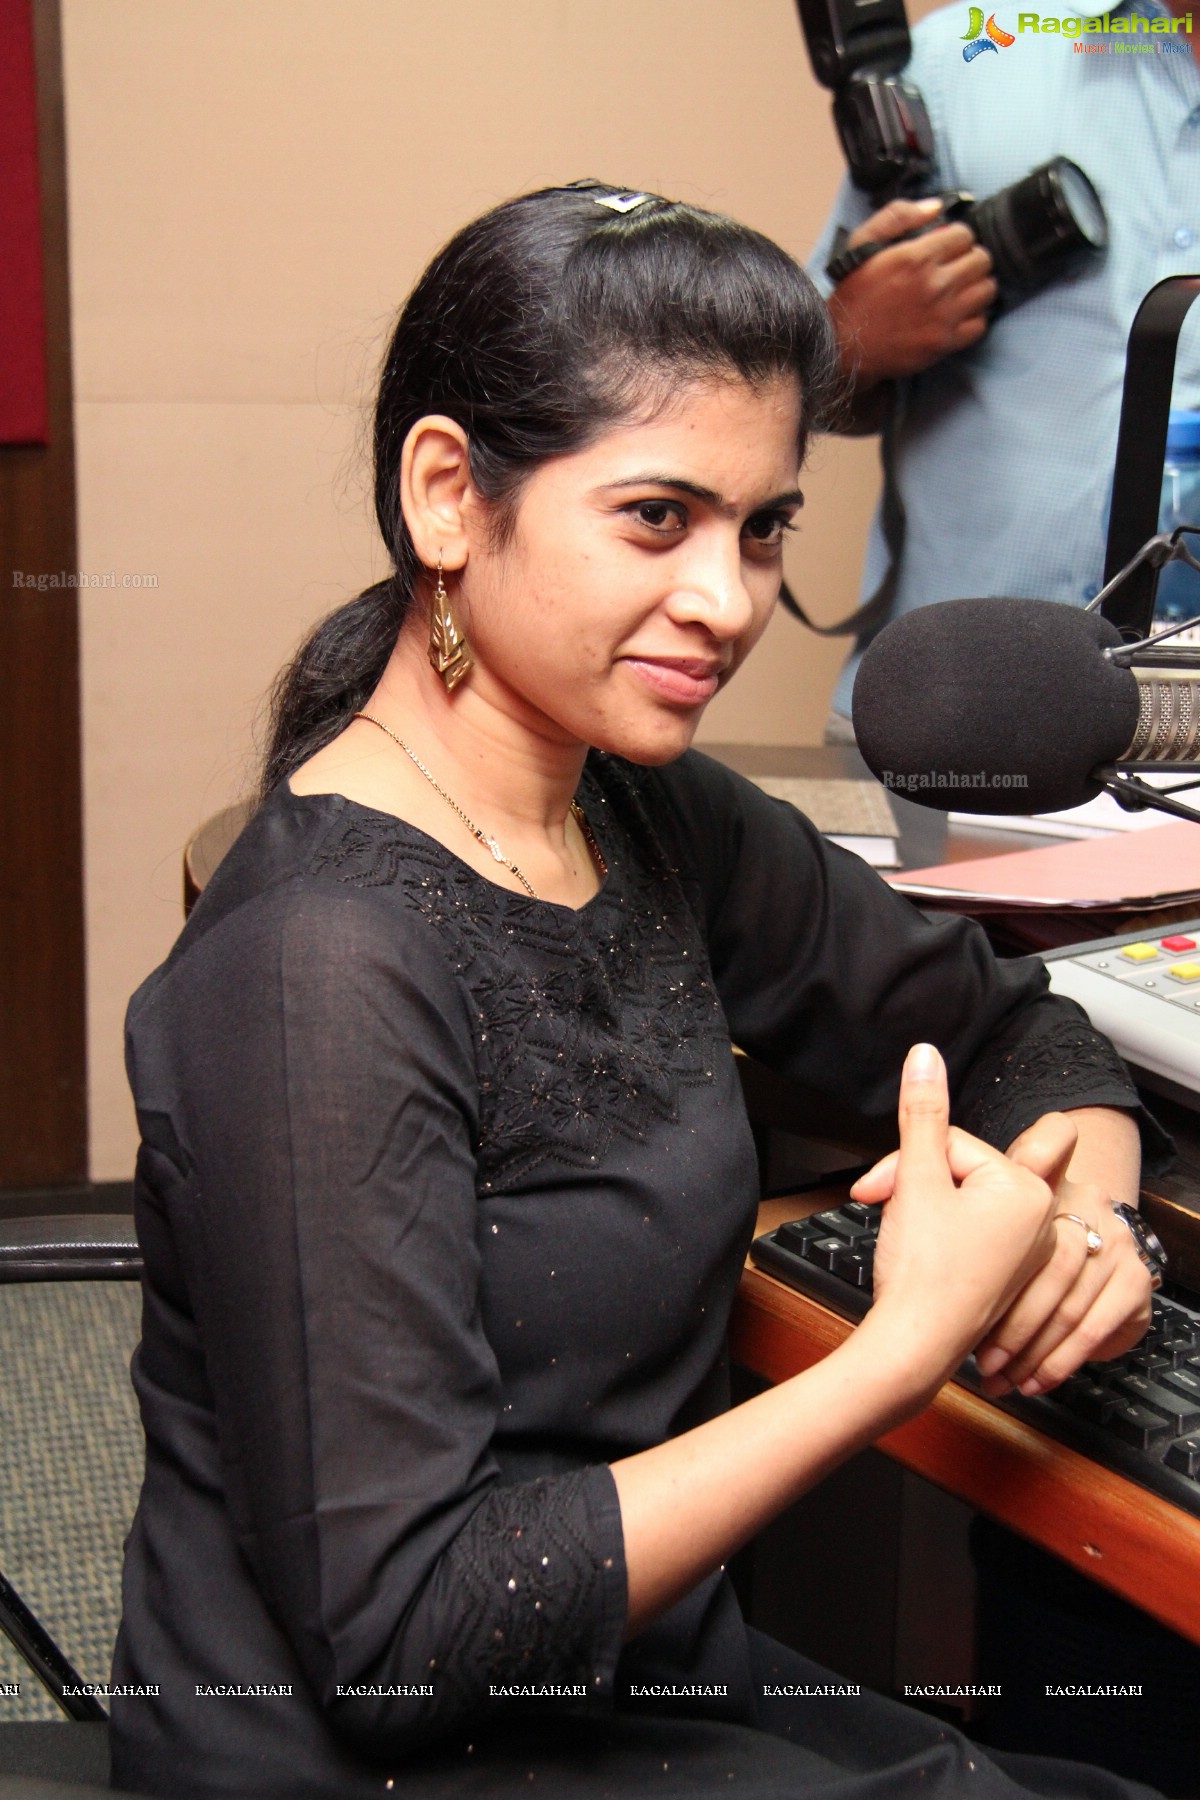 Rana Daggubati at Red FM